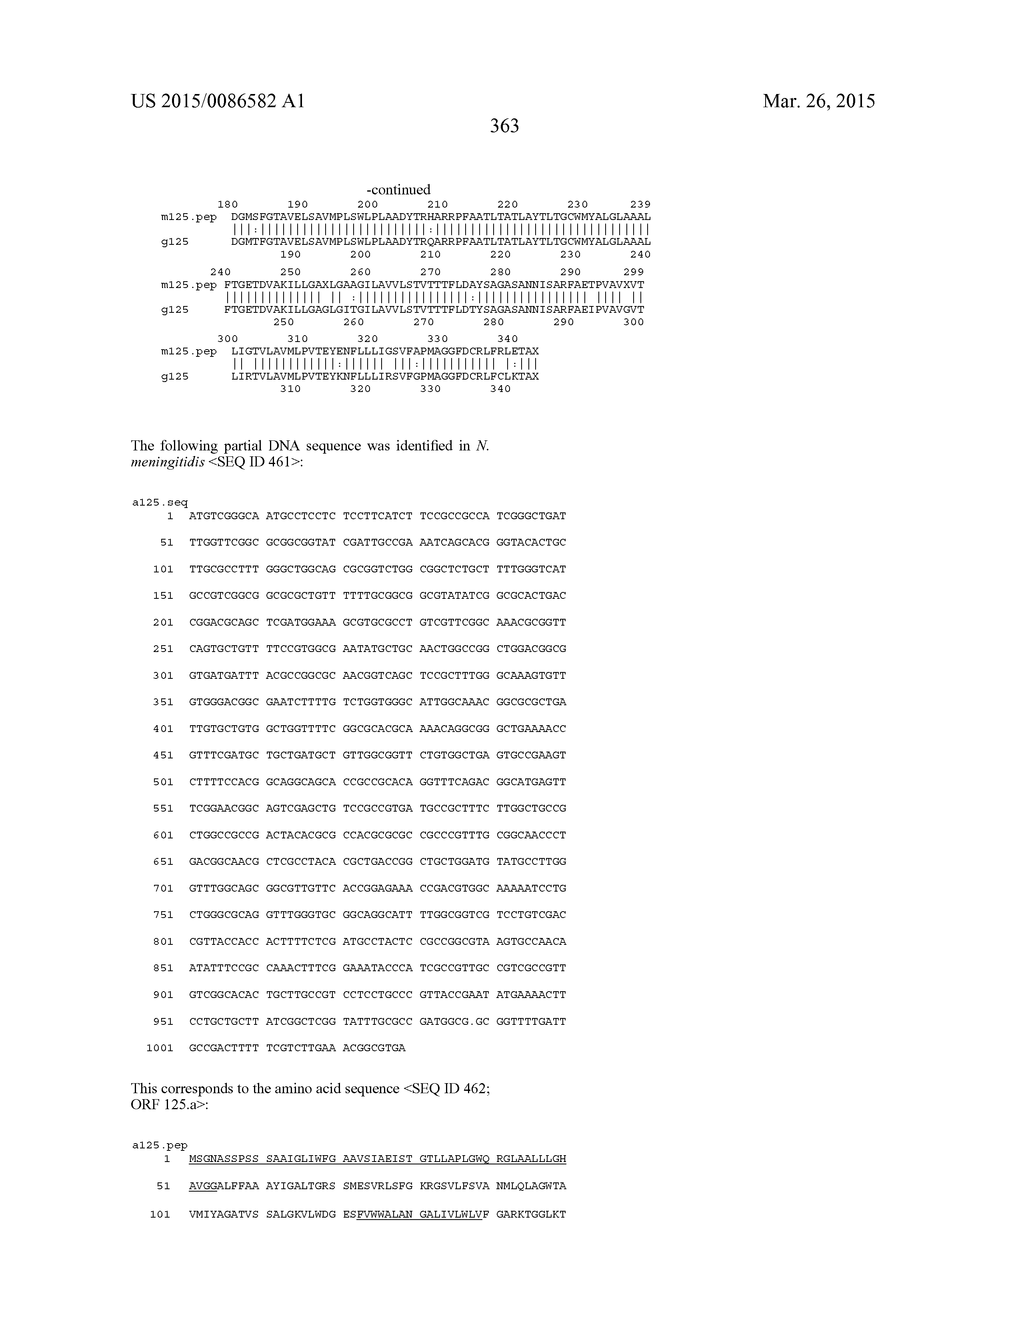 NEISSERIA MENINGITIDIS ANTIGENS AND COMPOSITIONS - diagram, schematic, and image 395